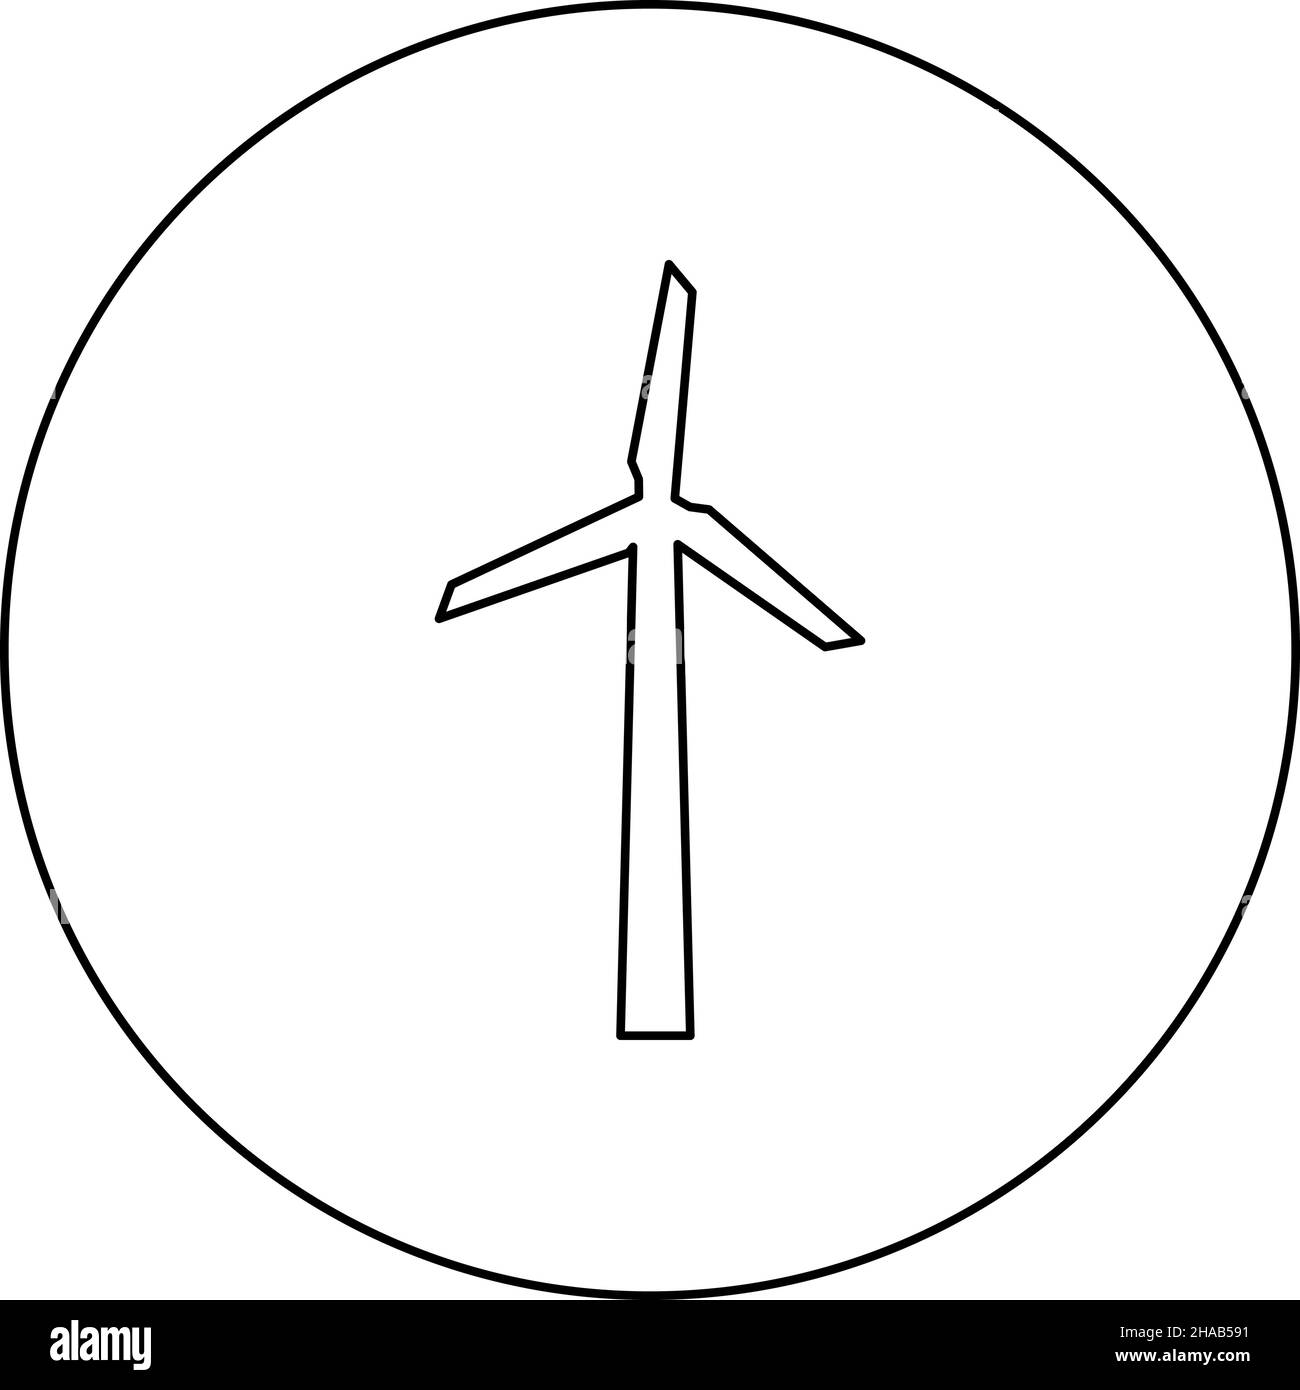 iconos de contorno plano de turbina eólica, aerogeneradores